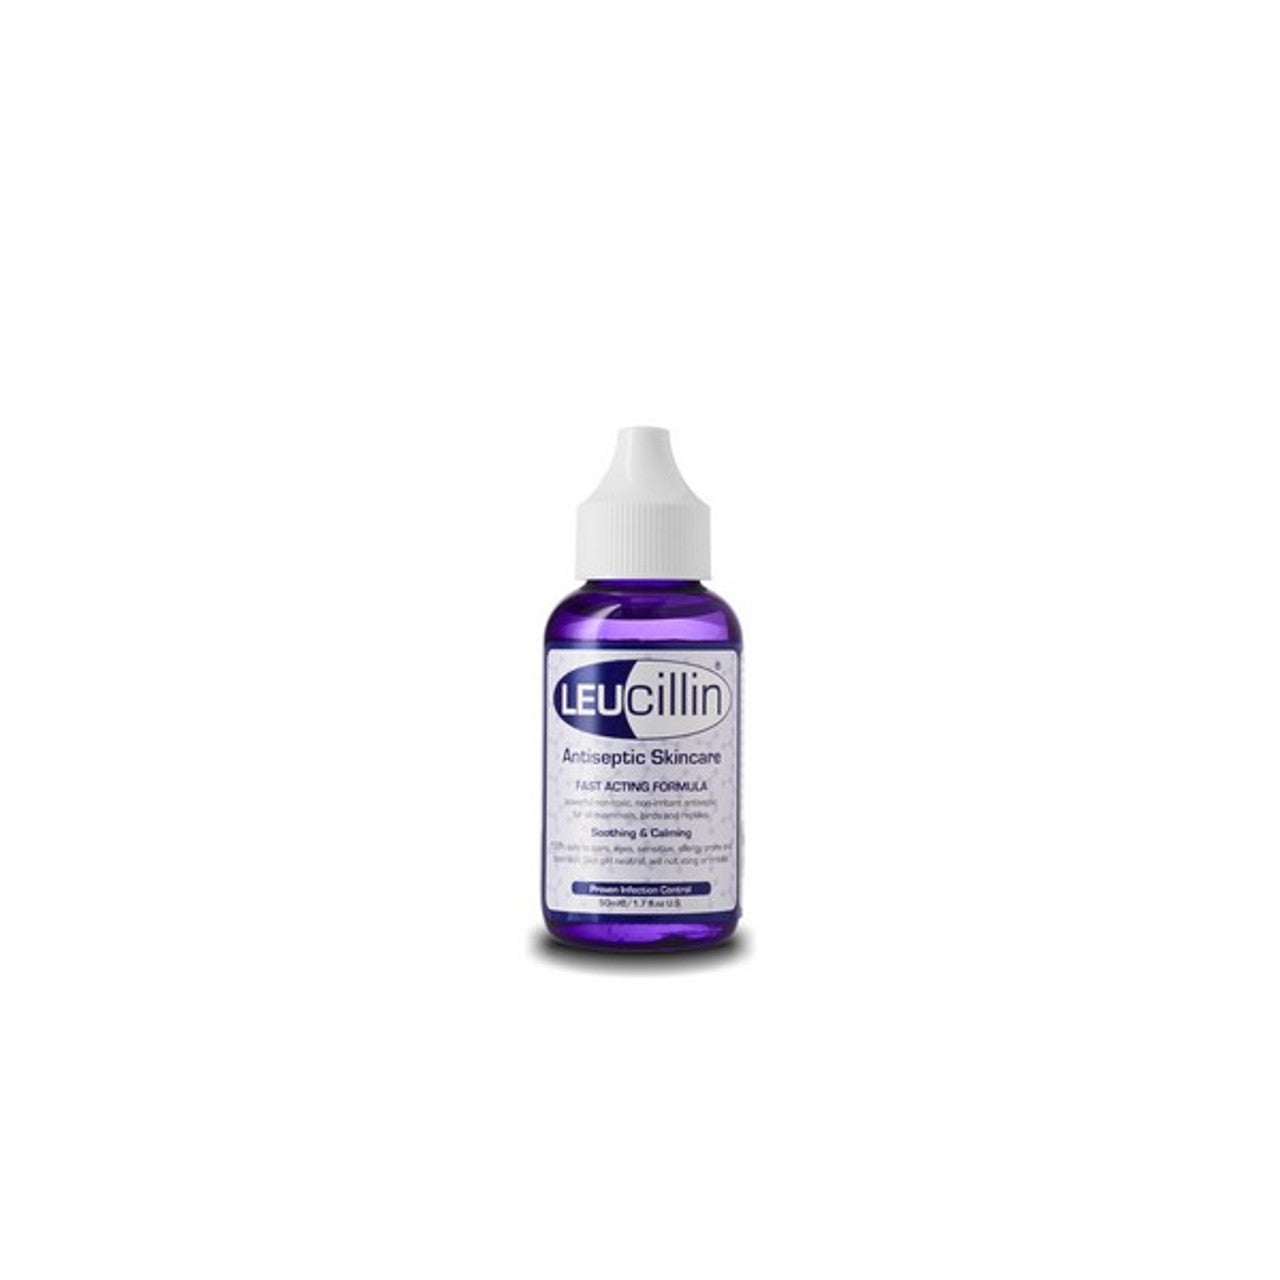 Leucillin Antiseptic Spray